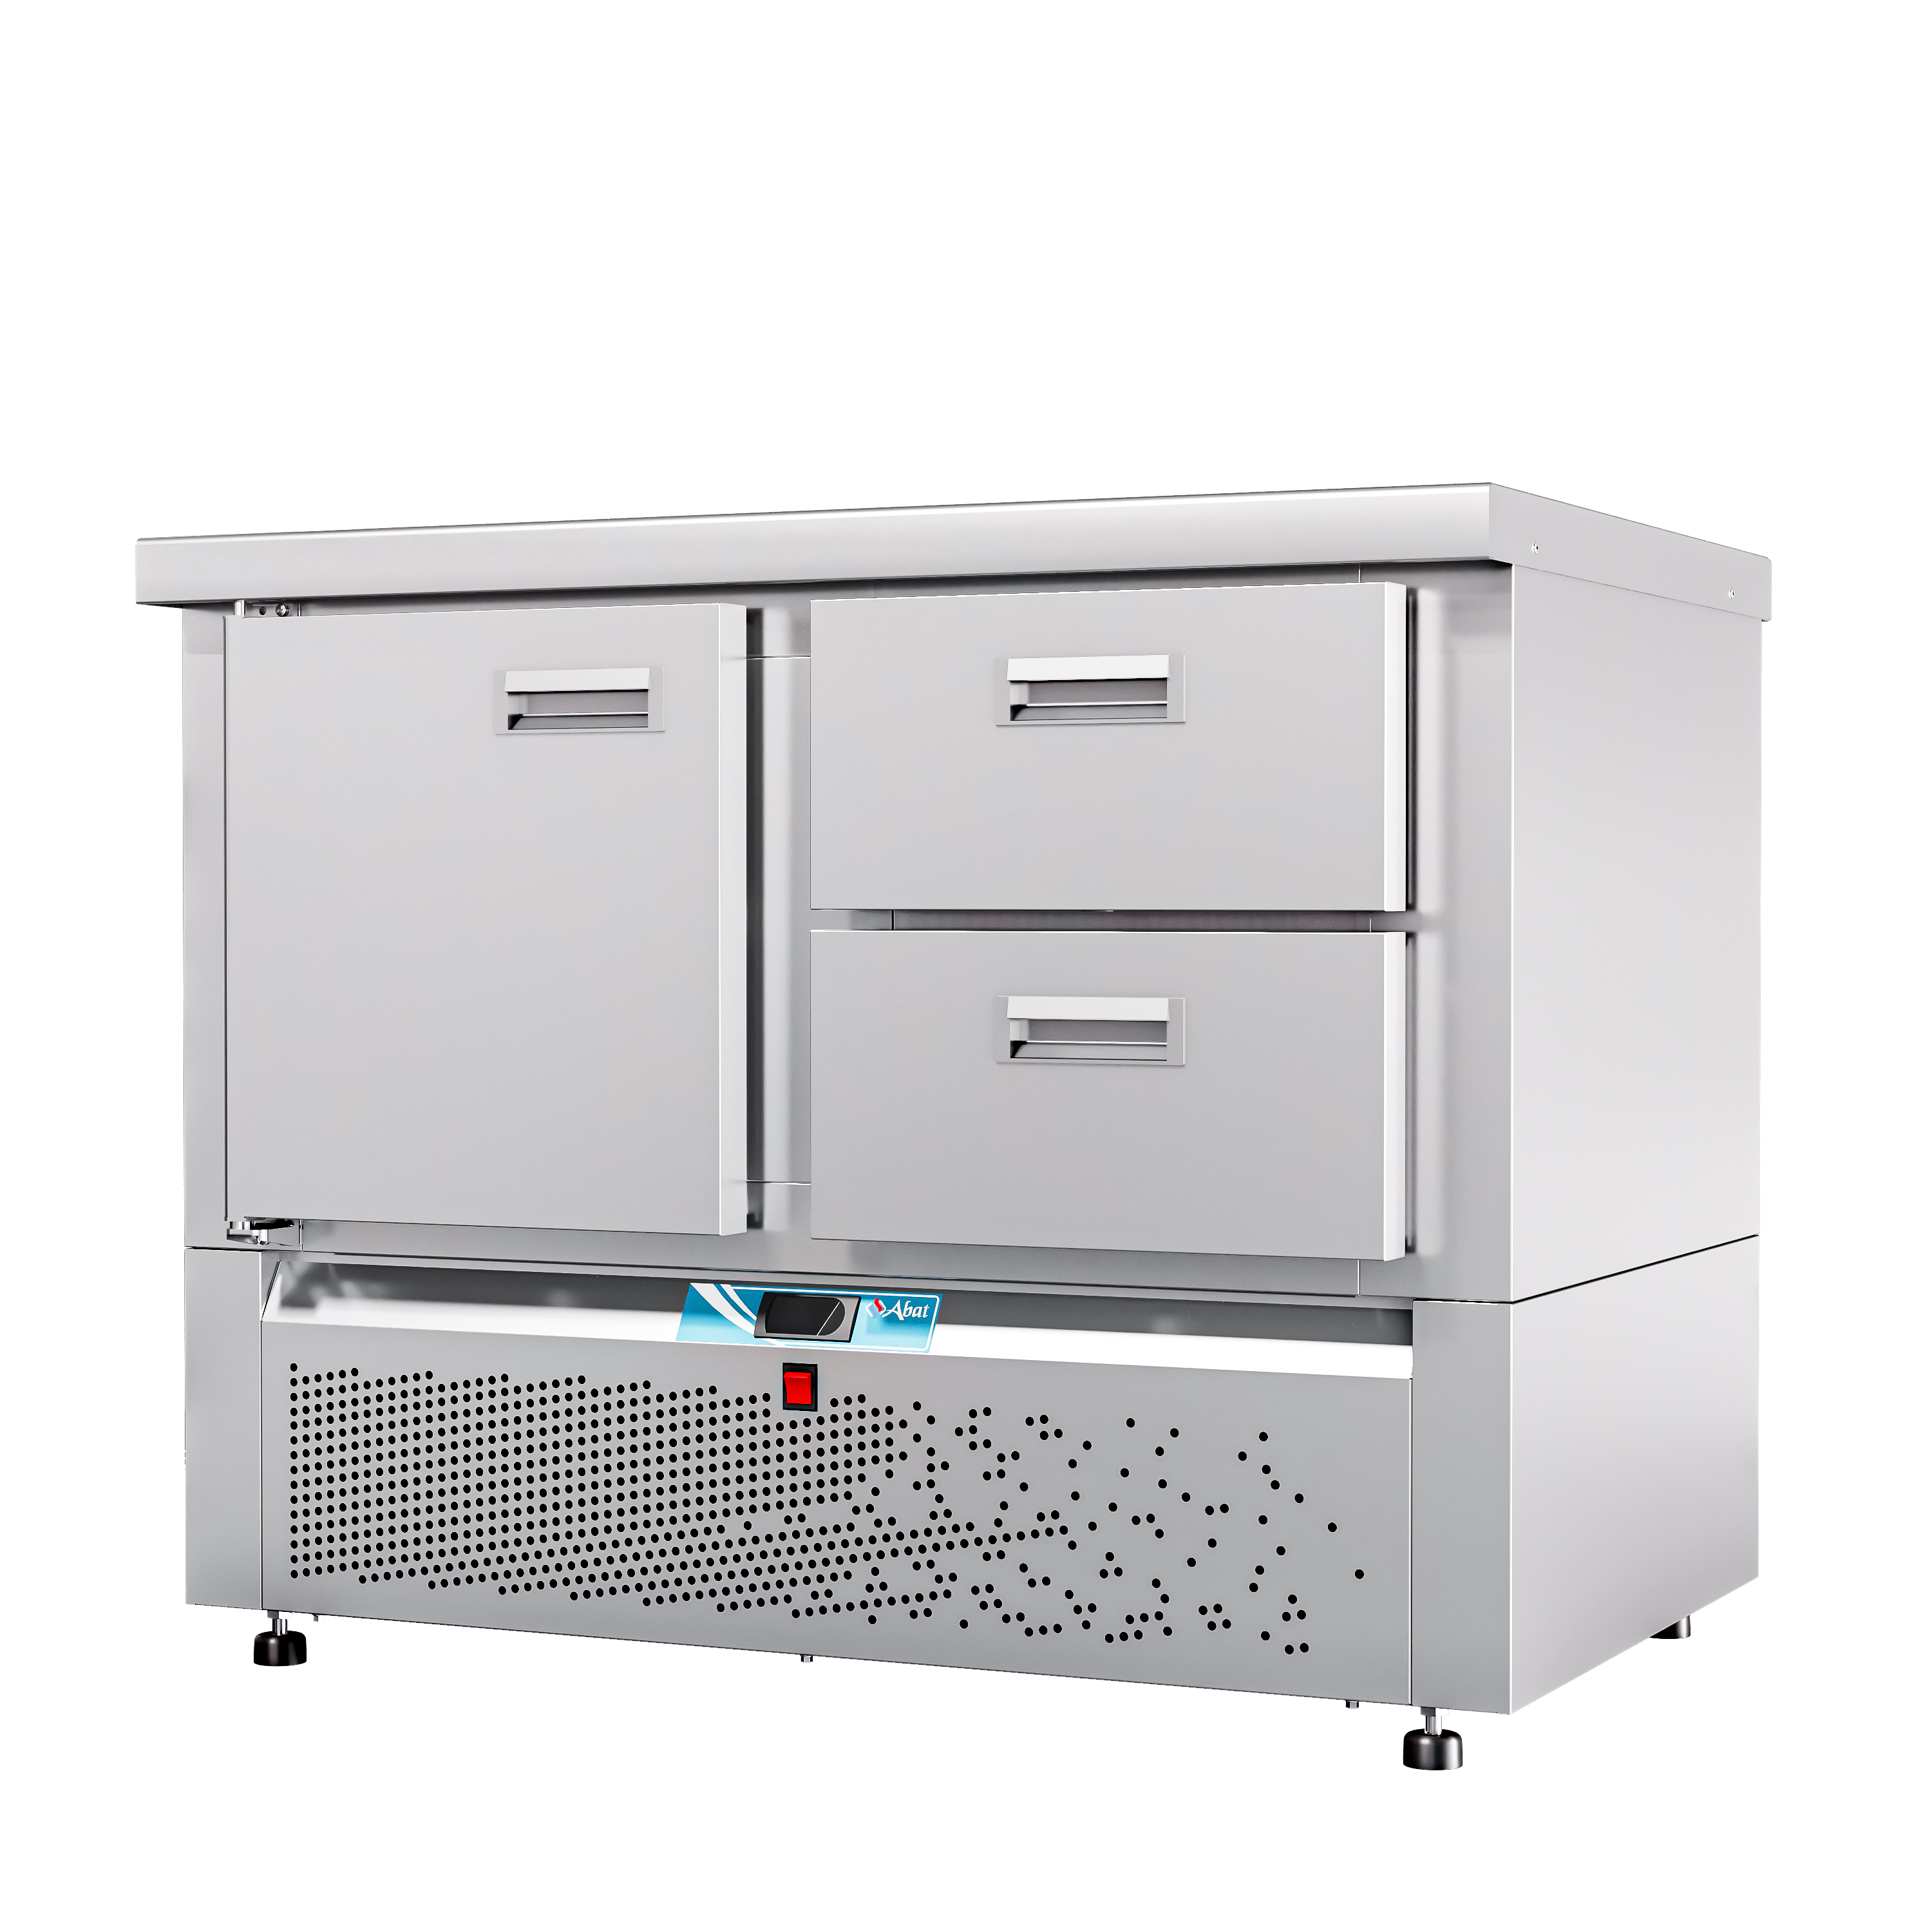 Стол холодильный среднетемпературный СХС-70Н-01 (дверь, ящики 1/2) без борта